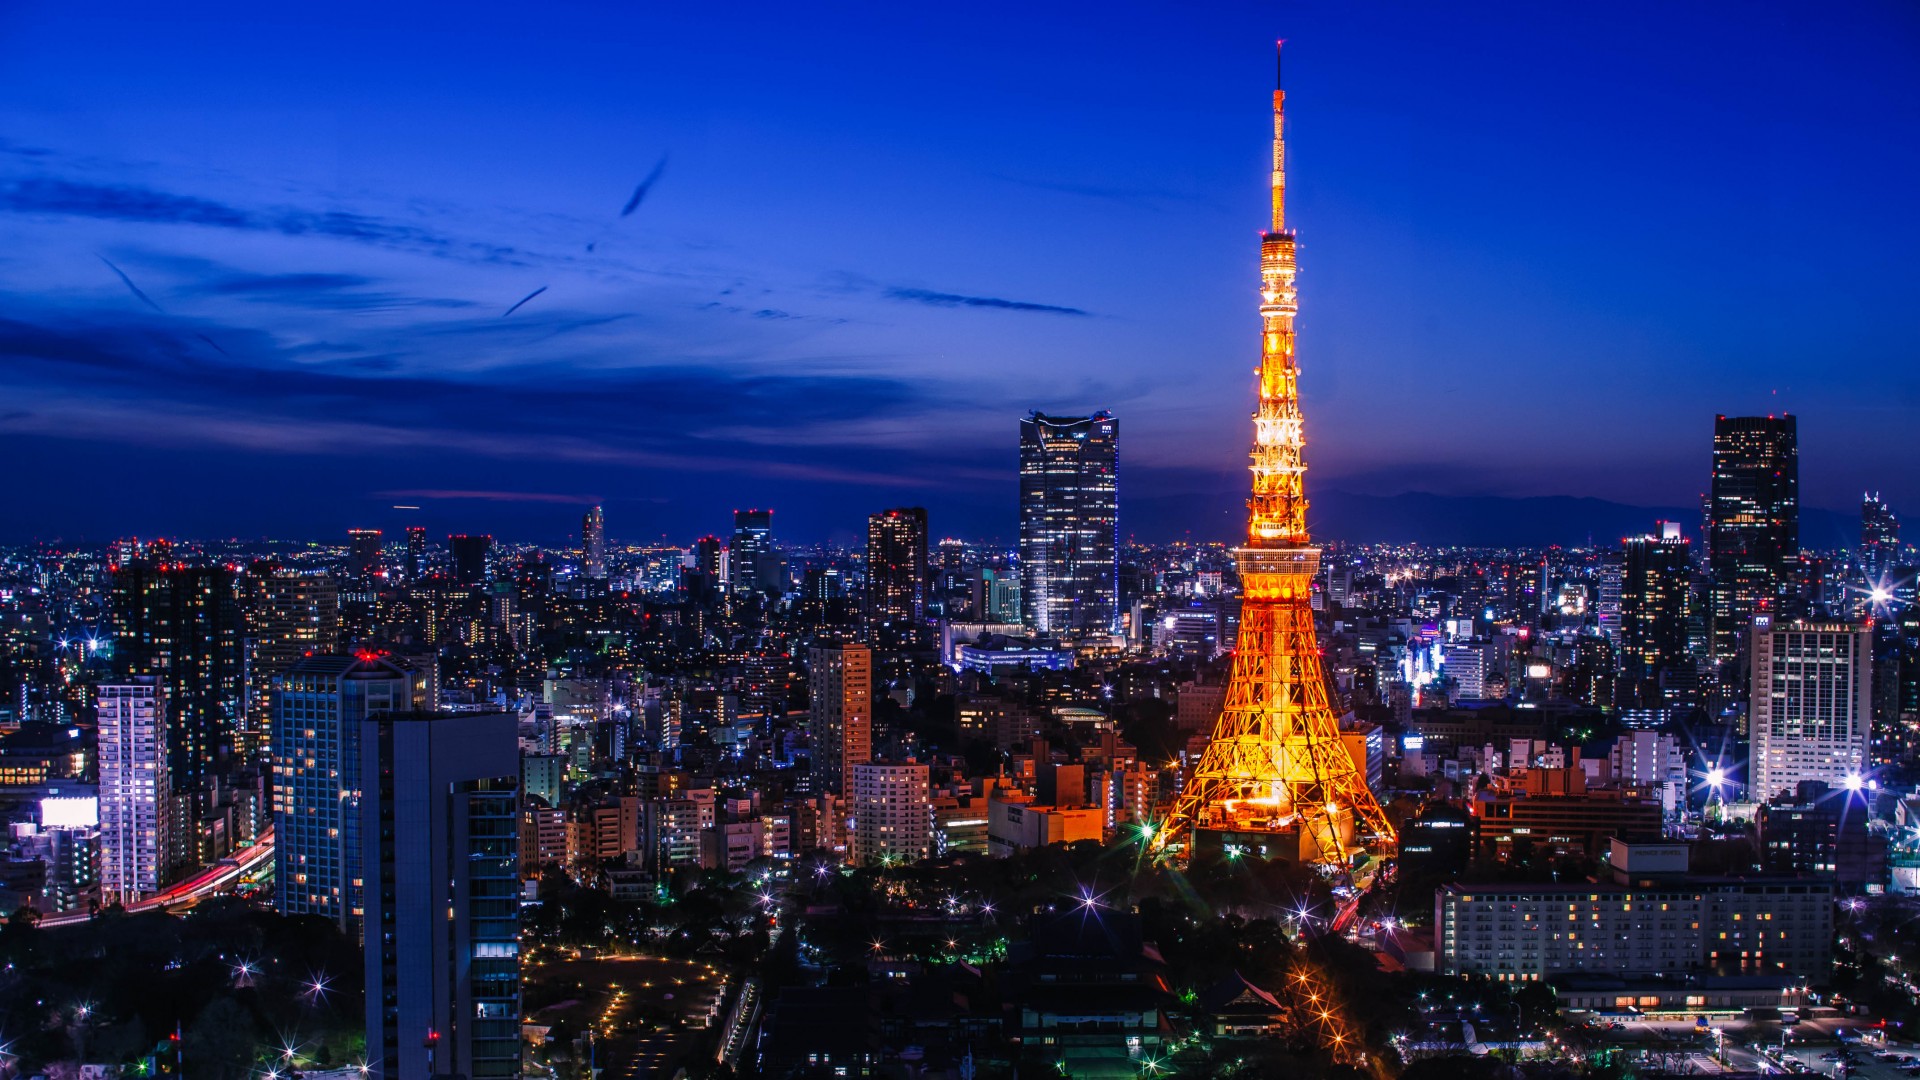 Ngắm nhìn tháp truyền hình Tokyo Skytree rực rỡ ánh đèn - một trong những tòa tháp cao nhất thế giới